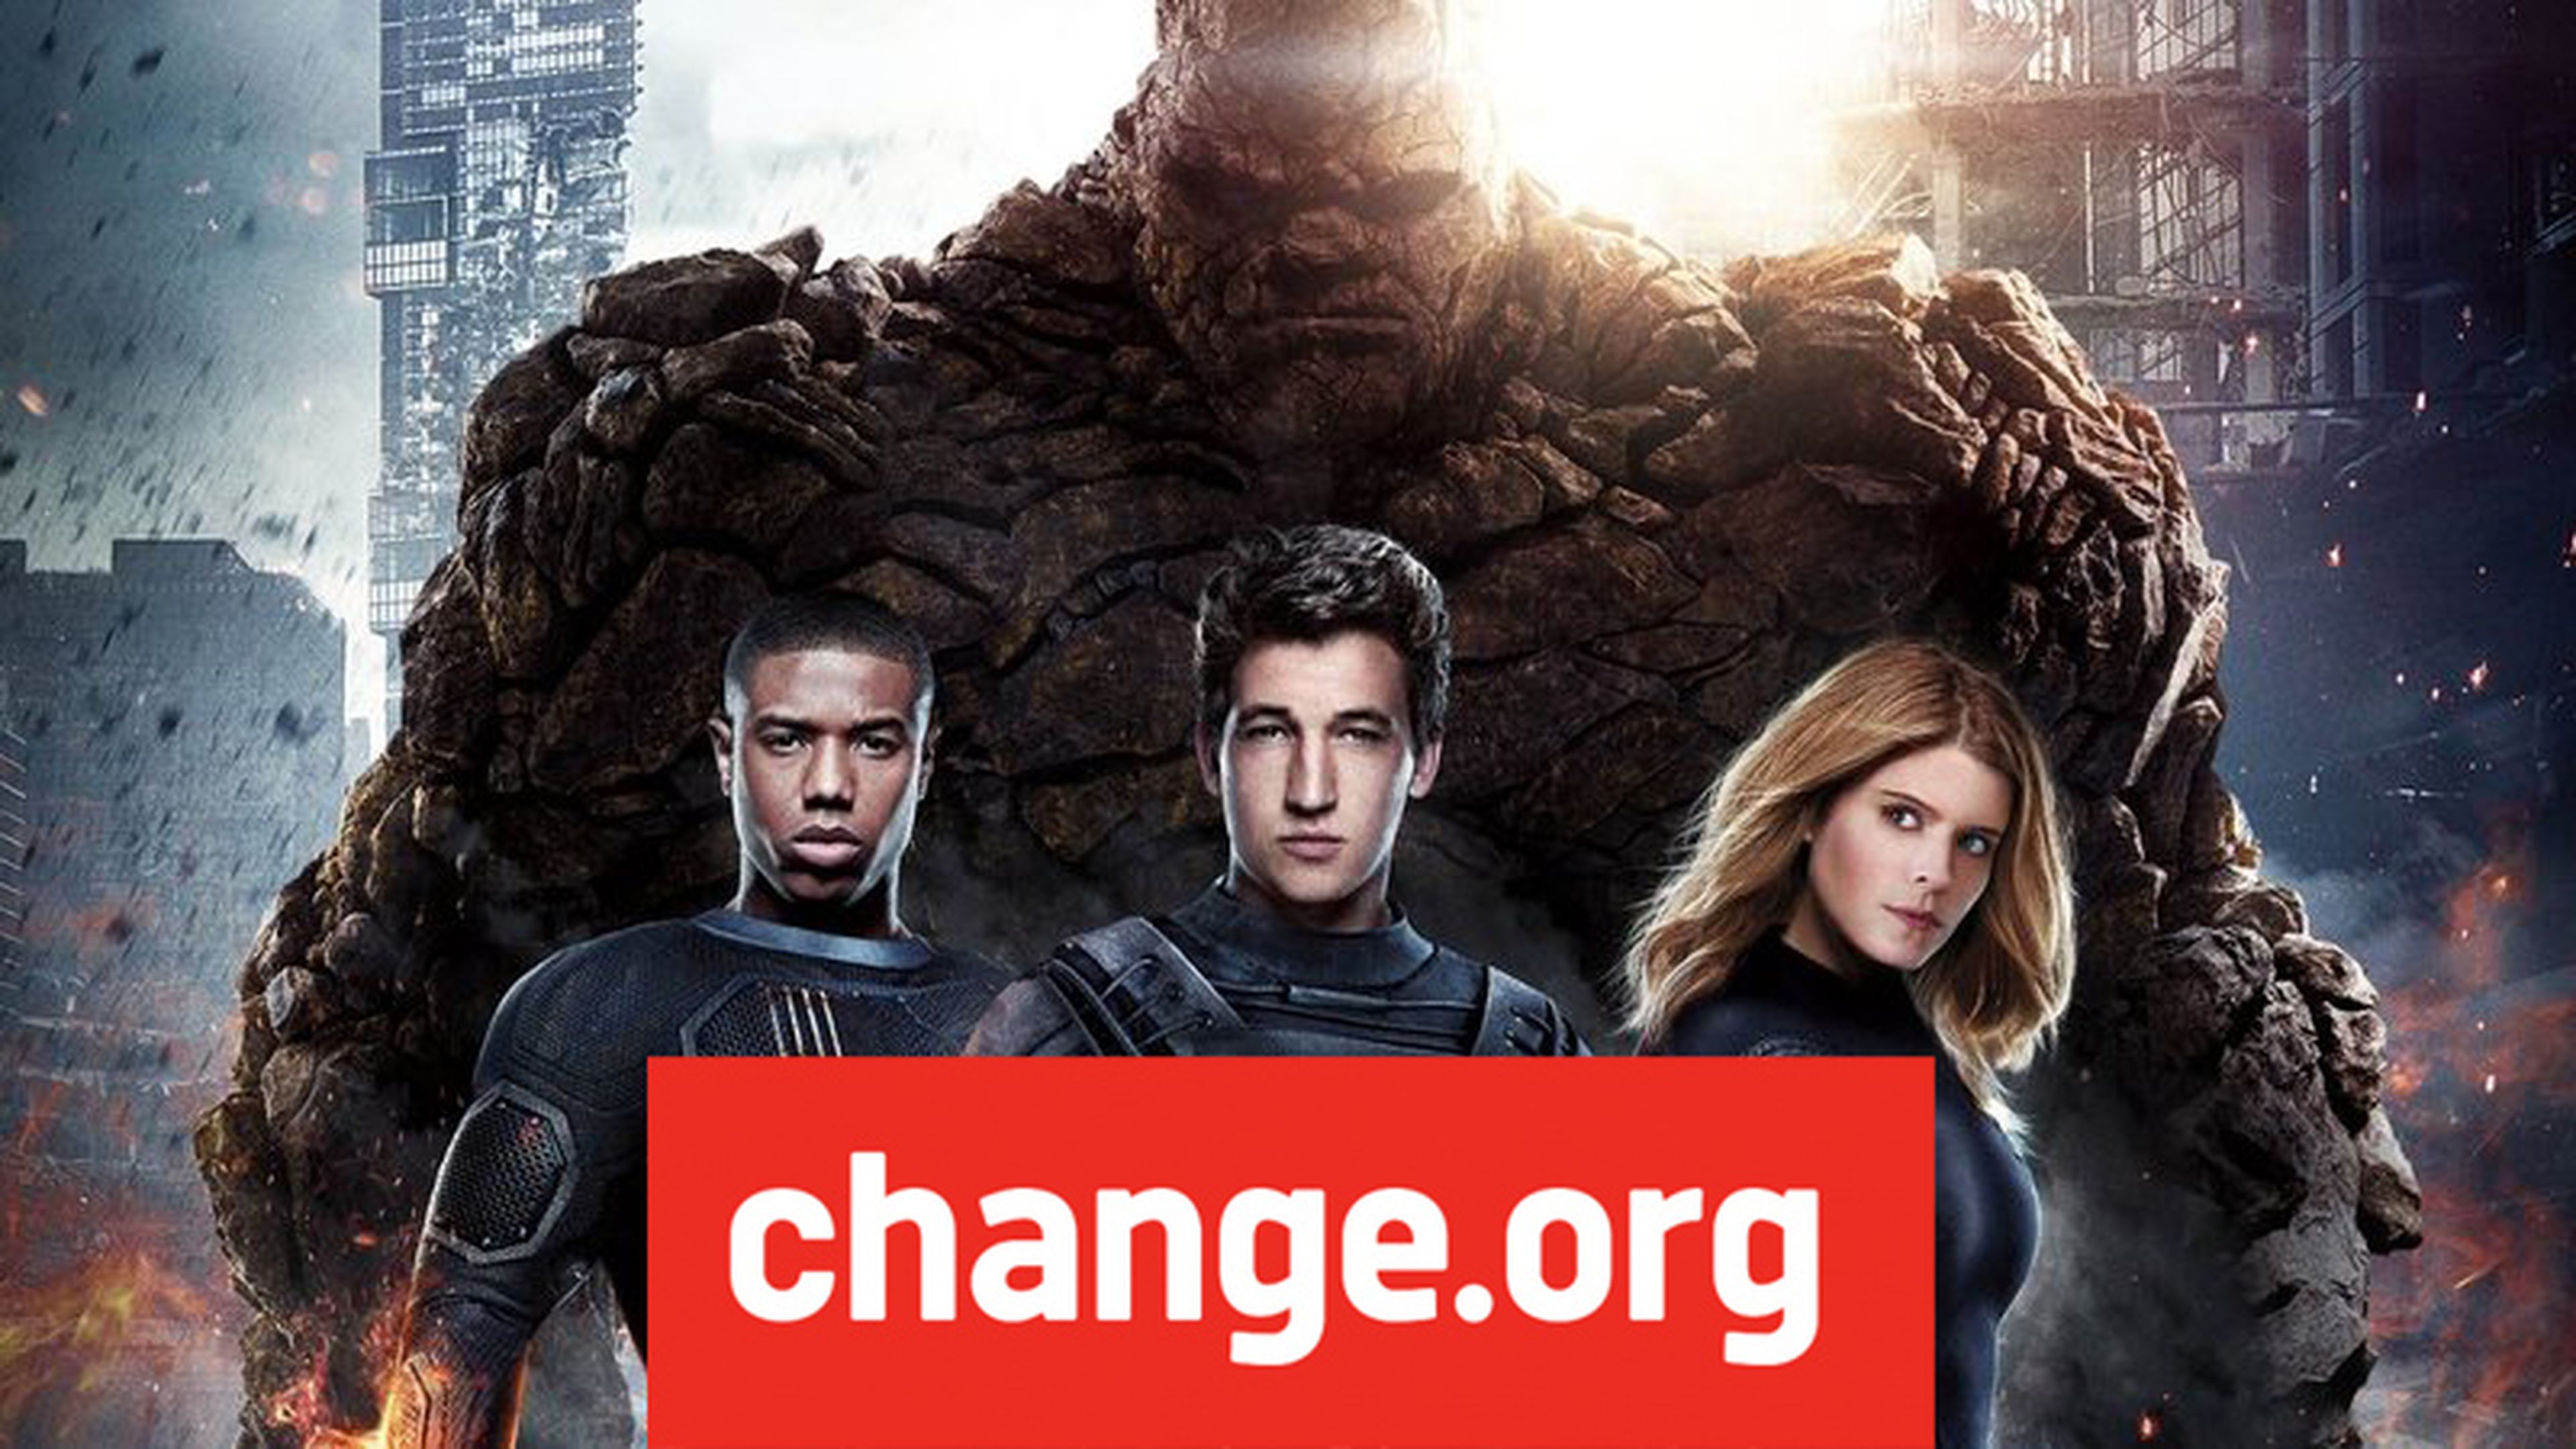 4 Fantásticos: Change.org de fans para que los derechos vuelvan a Marvel